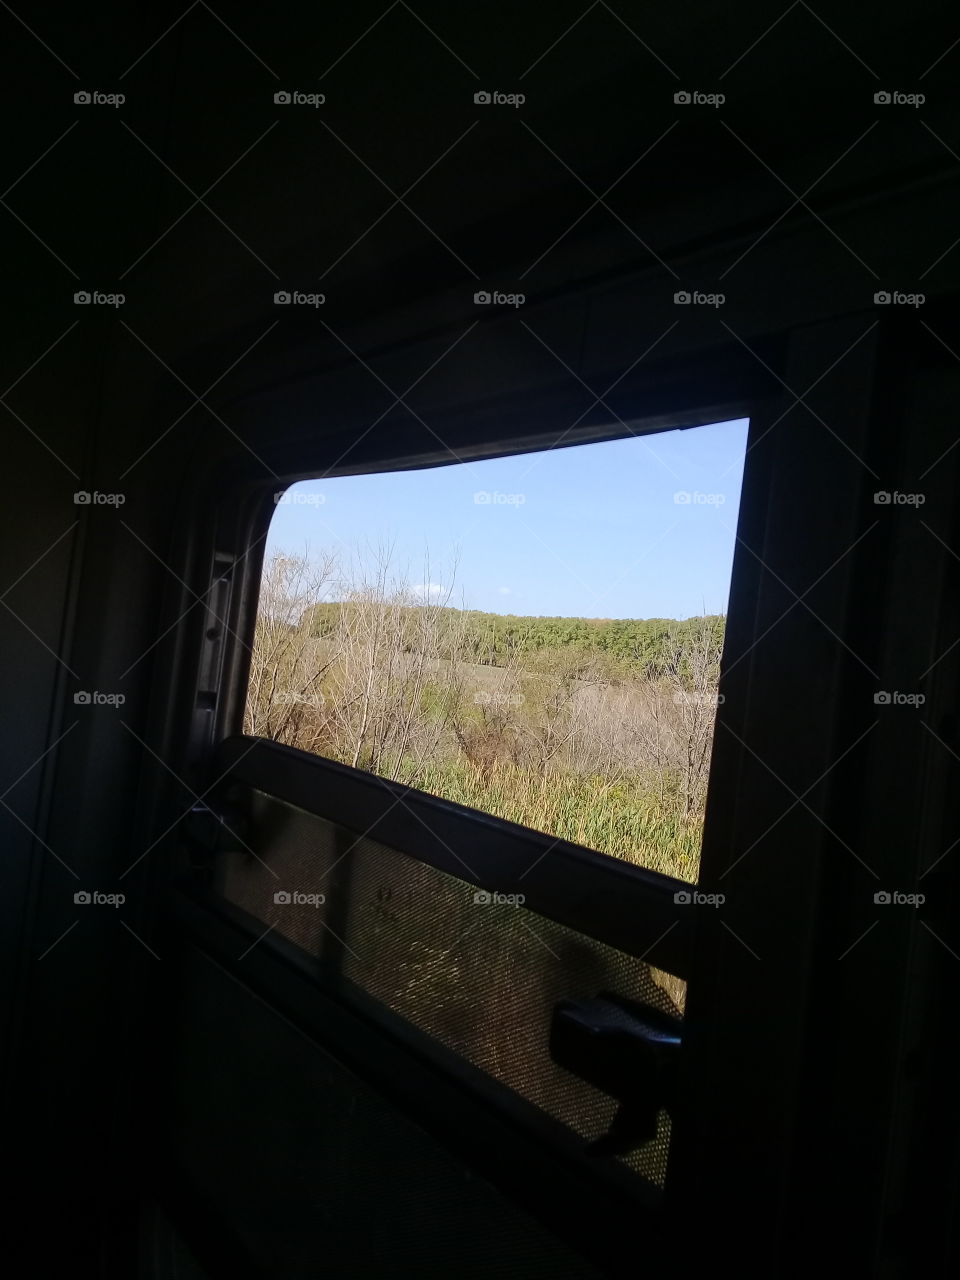 vista de un paisaje rural capturado desde la ventanilla de un tren en movimiento en pleno paseo.